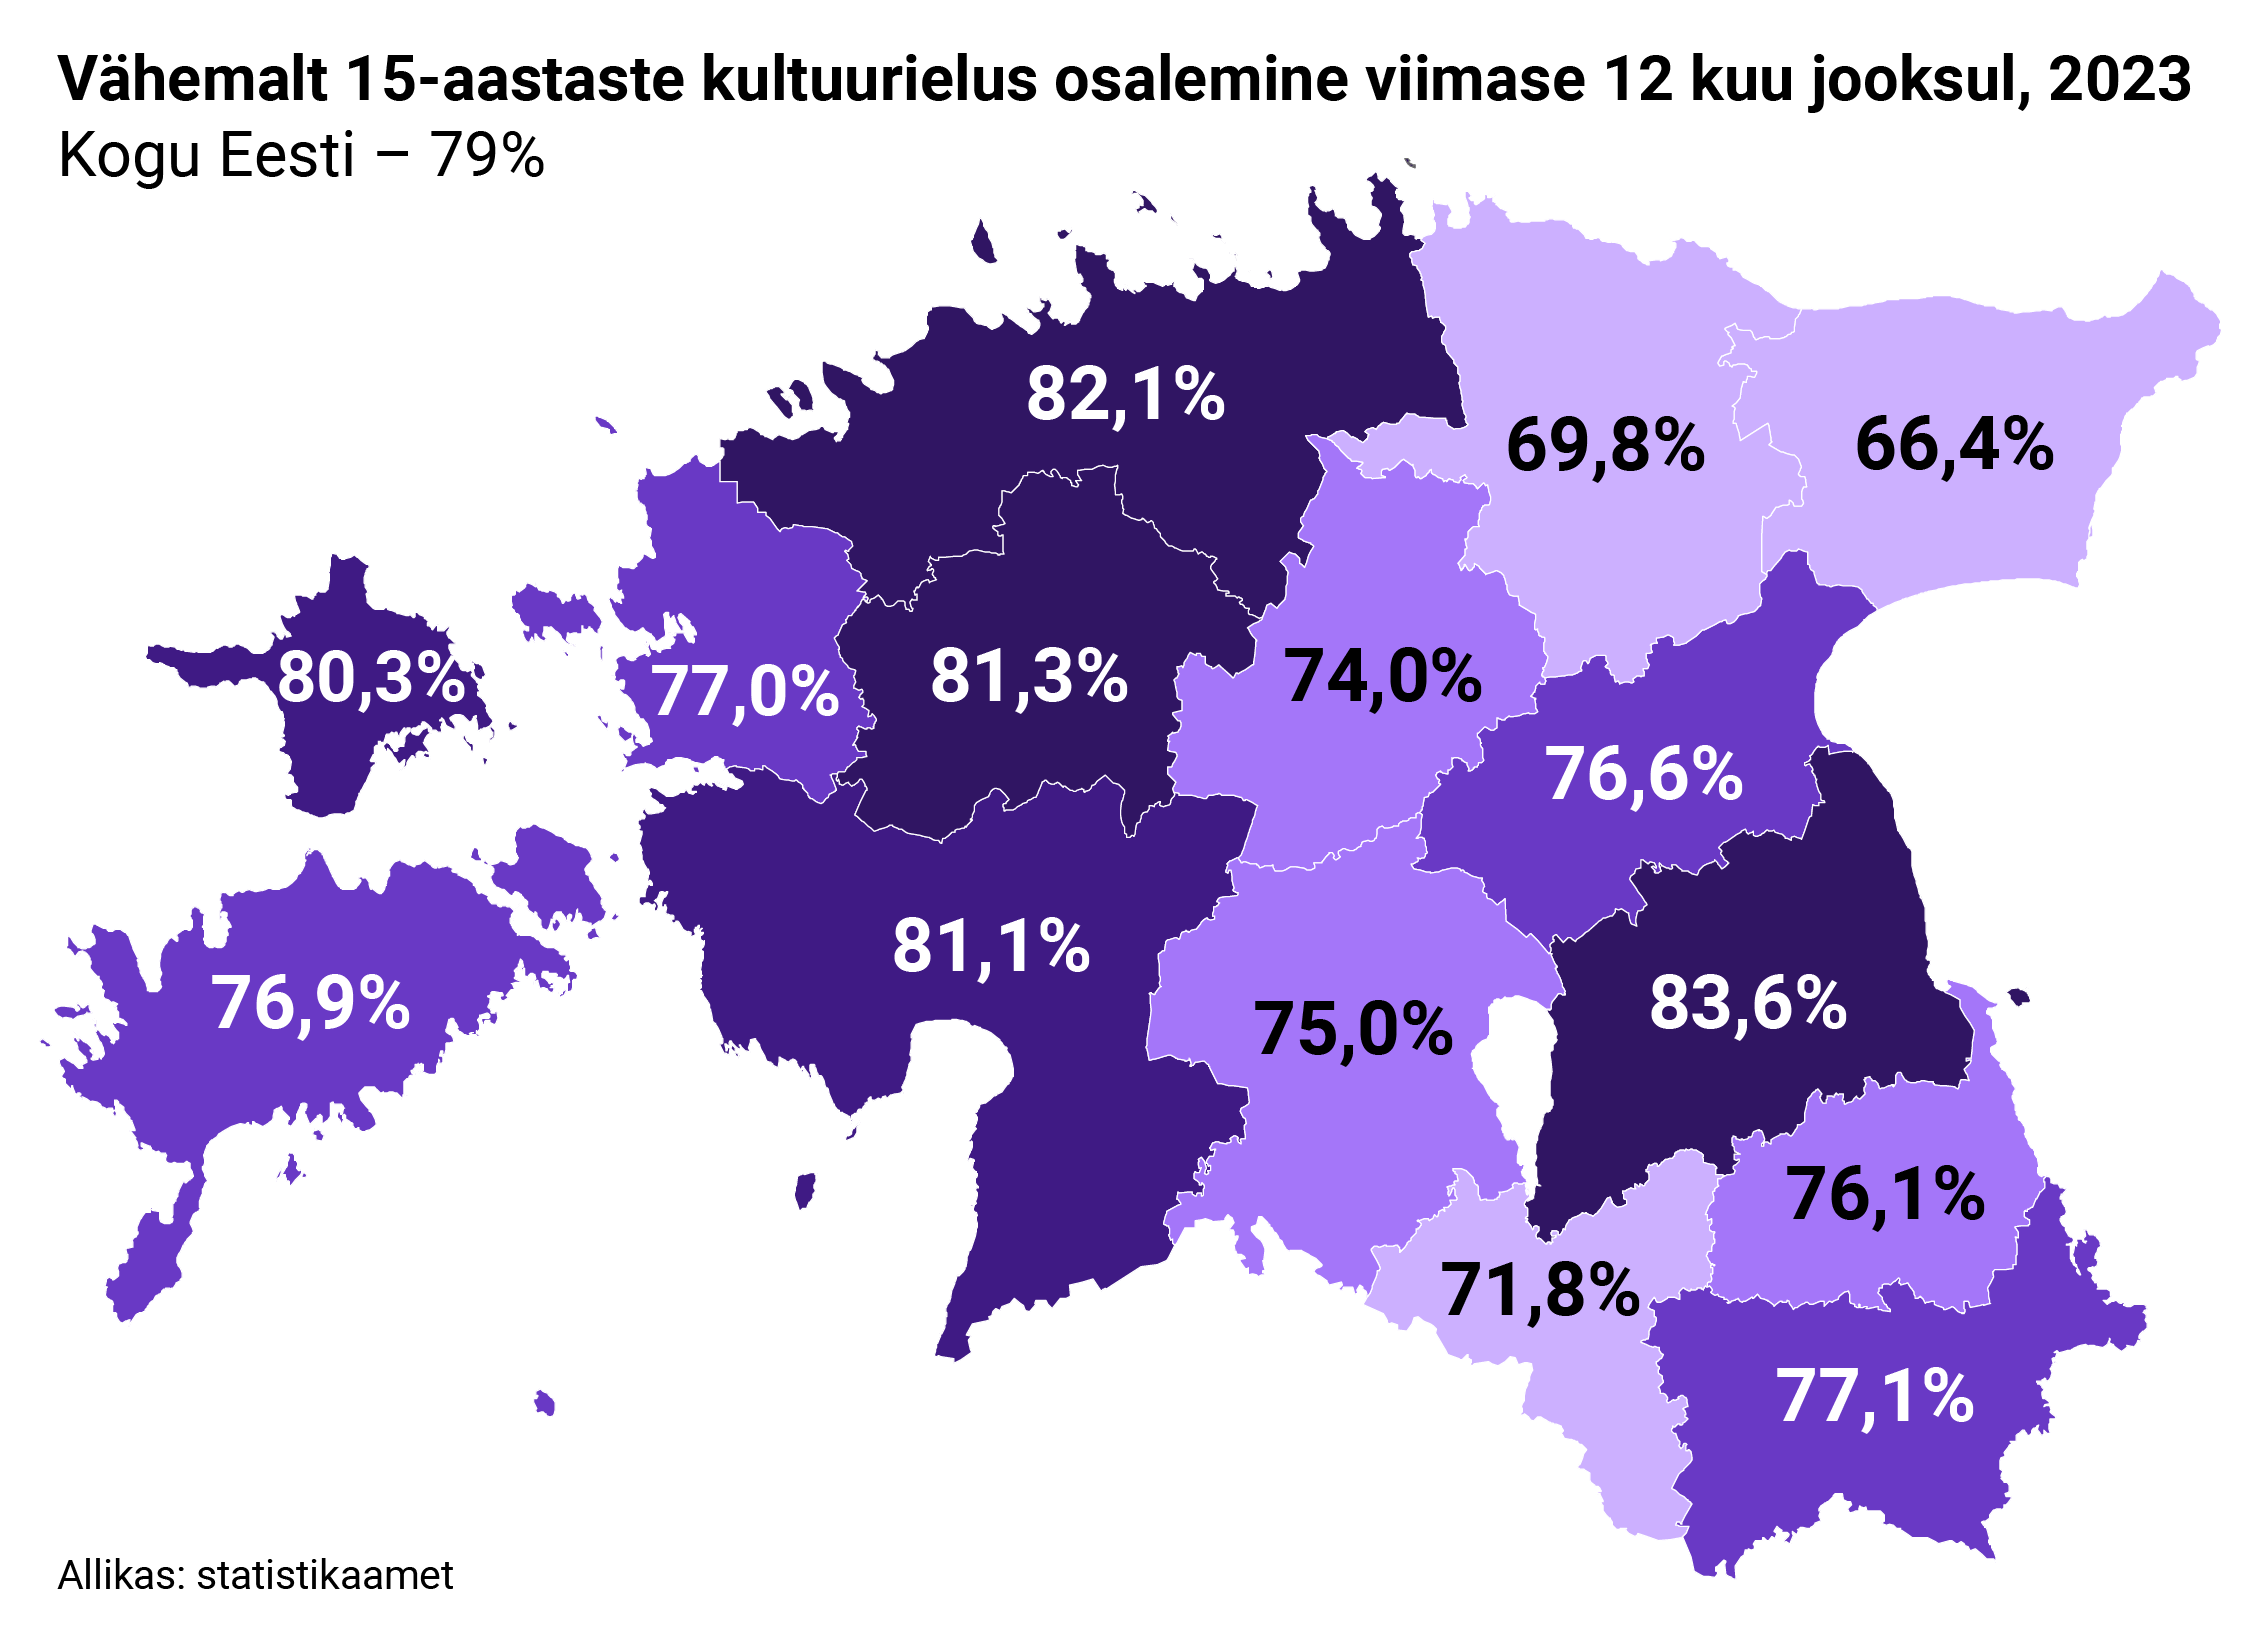 Eesti kaart: Vähemalt 15-aastaste kultuurielus osalemine viimase 12 kuu jooksul, 2023